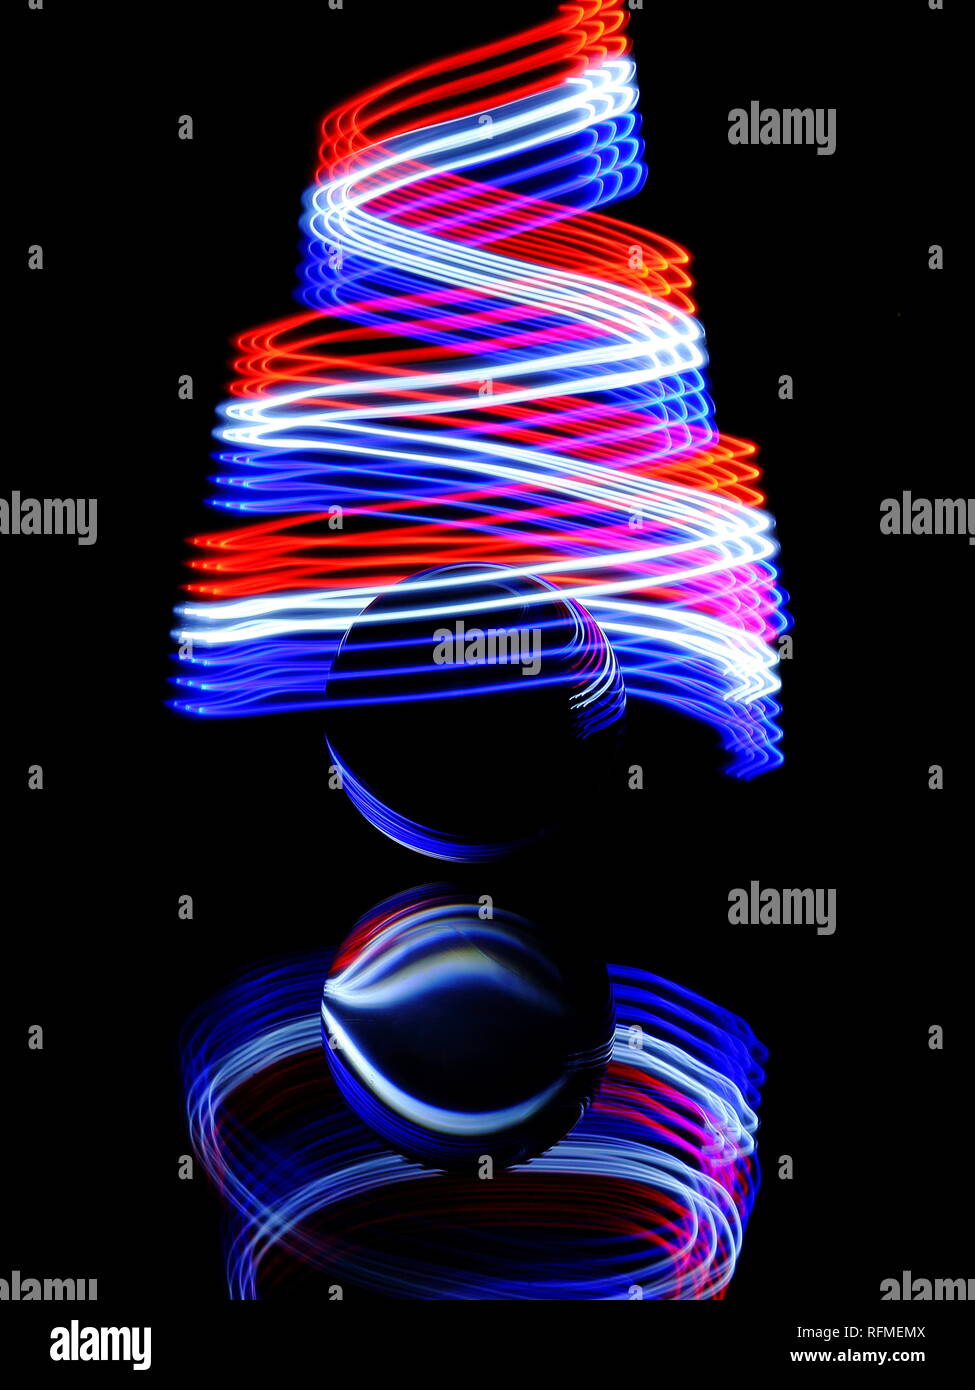 Infinity leichte Wanderwege mit kleine Taschenlampe in einer spiralförmigen Bewegung erstellt Stockfoto